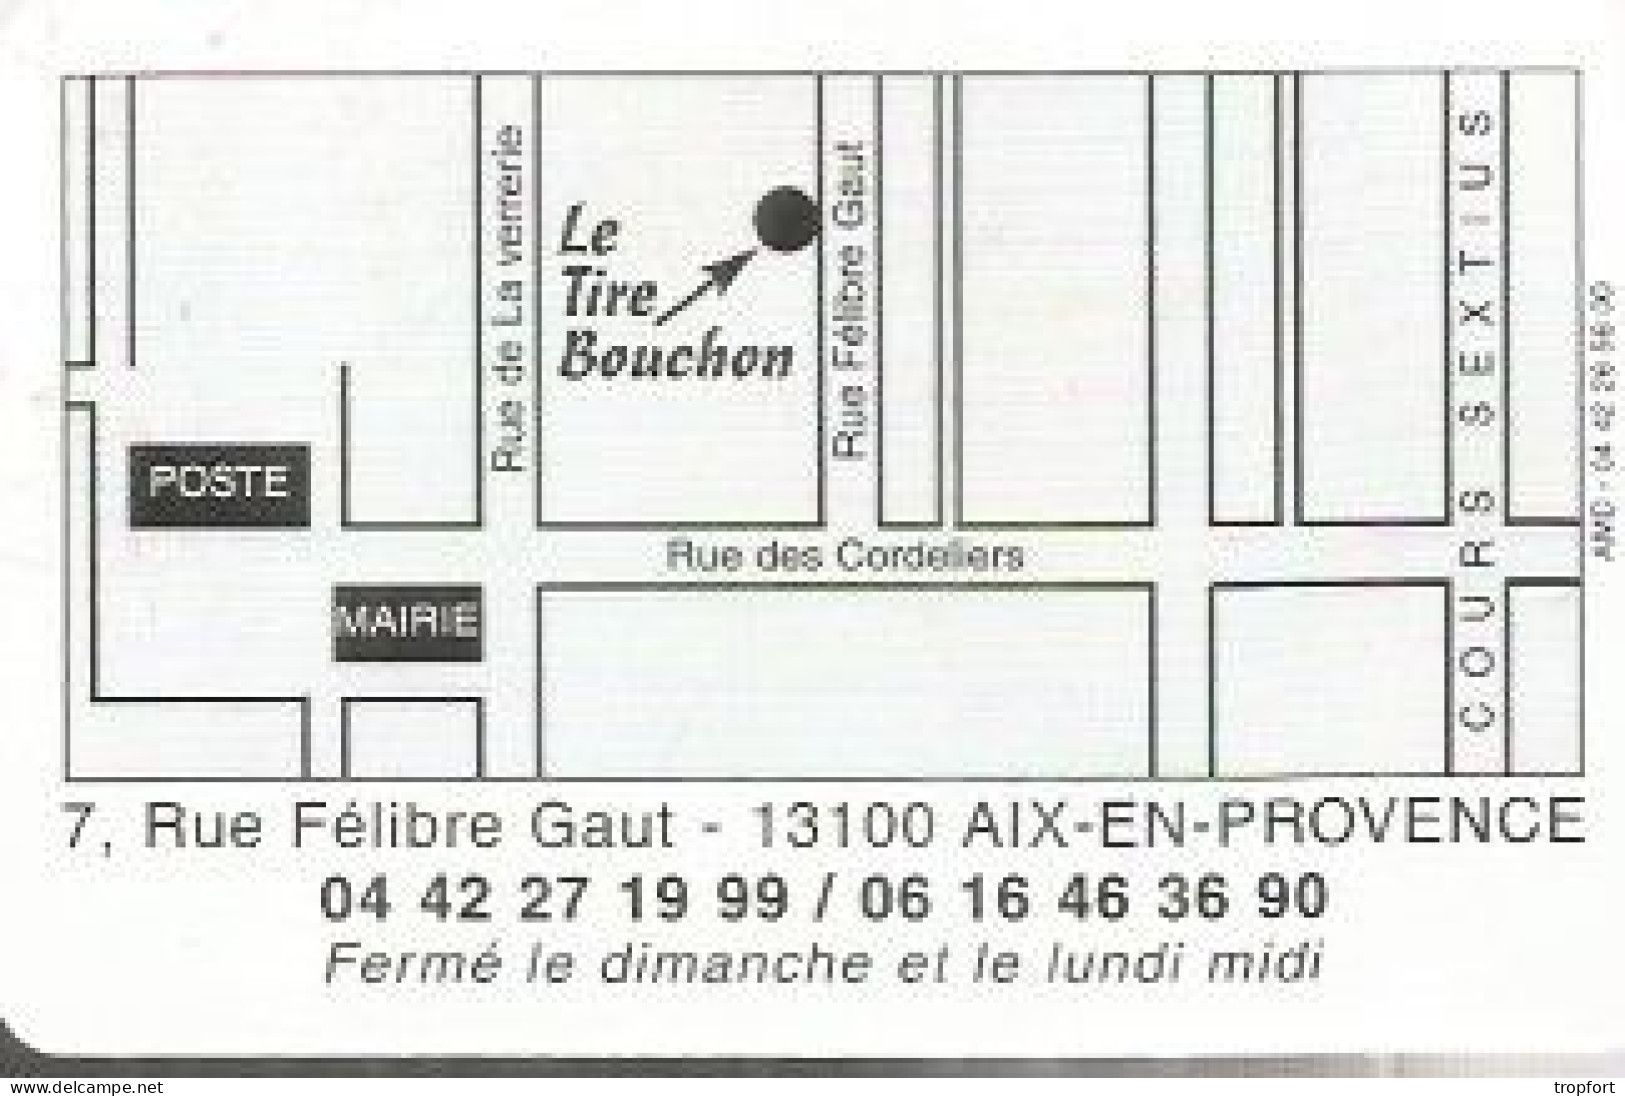 Carte De Visite Restaurant Le Tire Bouchon  13 AIX EN PROVENCE  TIRE BOUCHON - Tarjetas De Visita